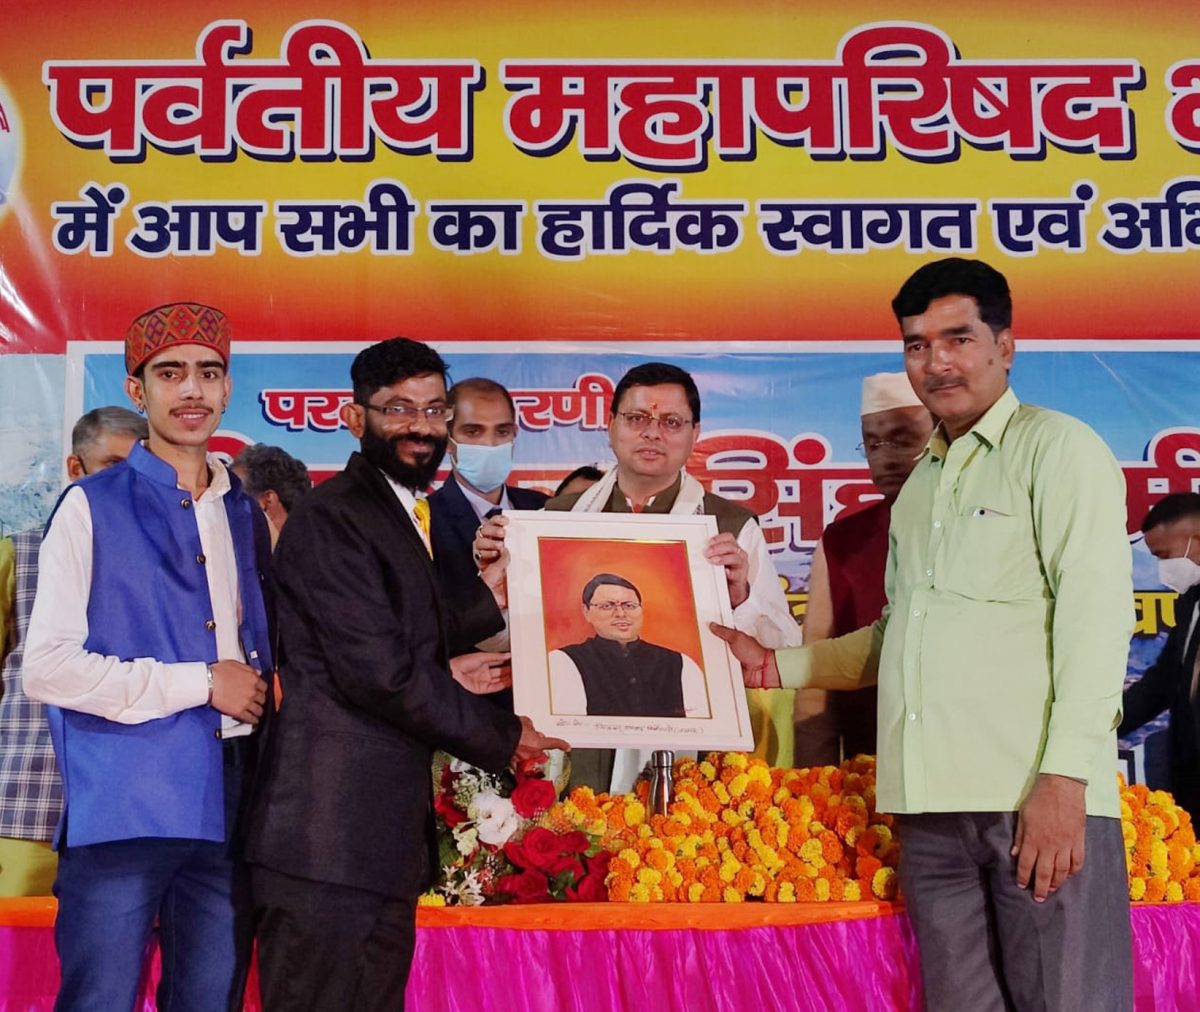 लखनऊ में पर्वतीय महापरिषद लखनऊ द्वारा आयोजित स्वागत समारोह में शामिल हुए मुख्यमंत्री पुष्कर सिंह धामी